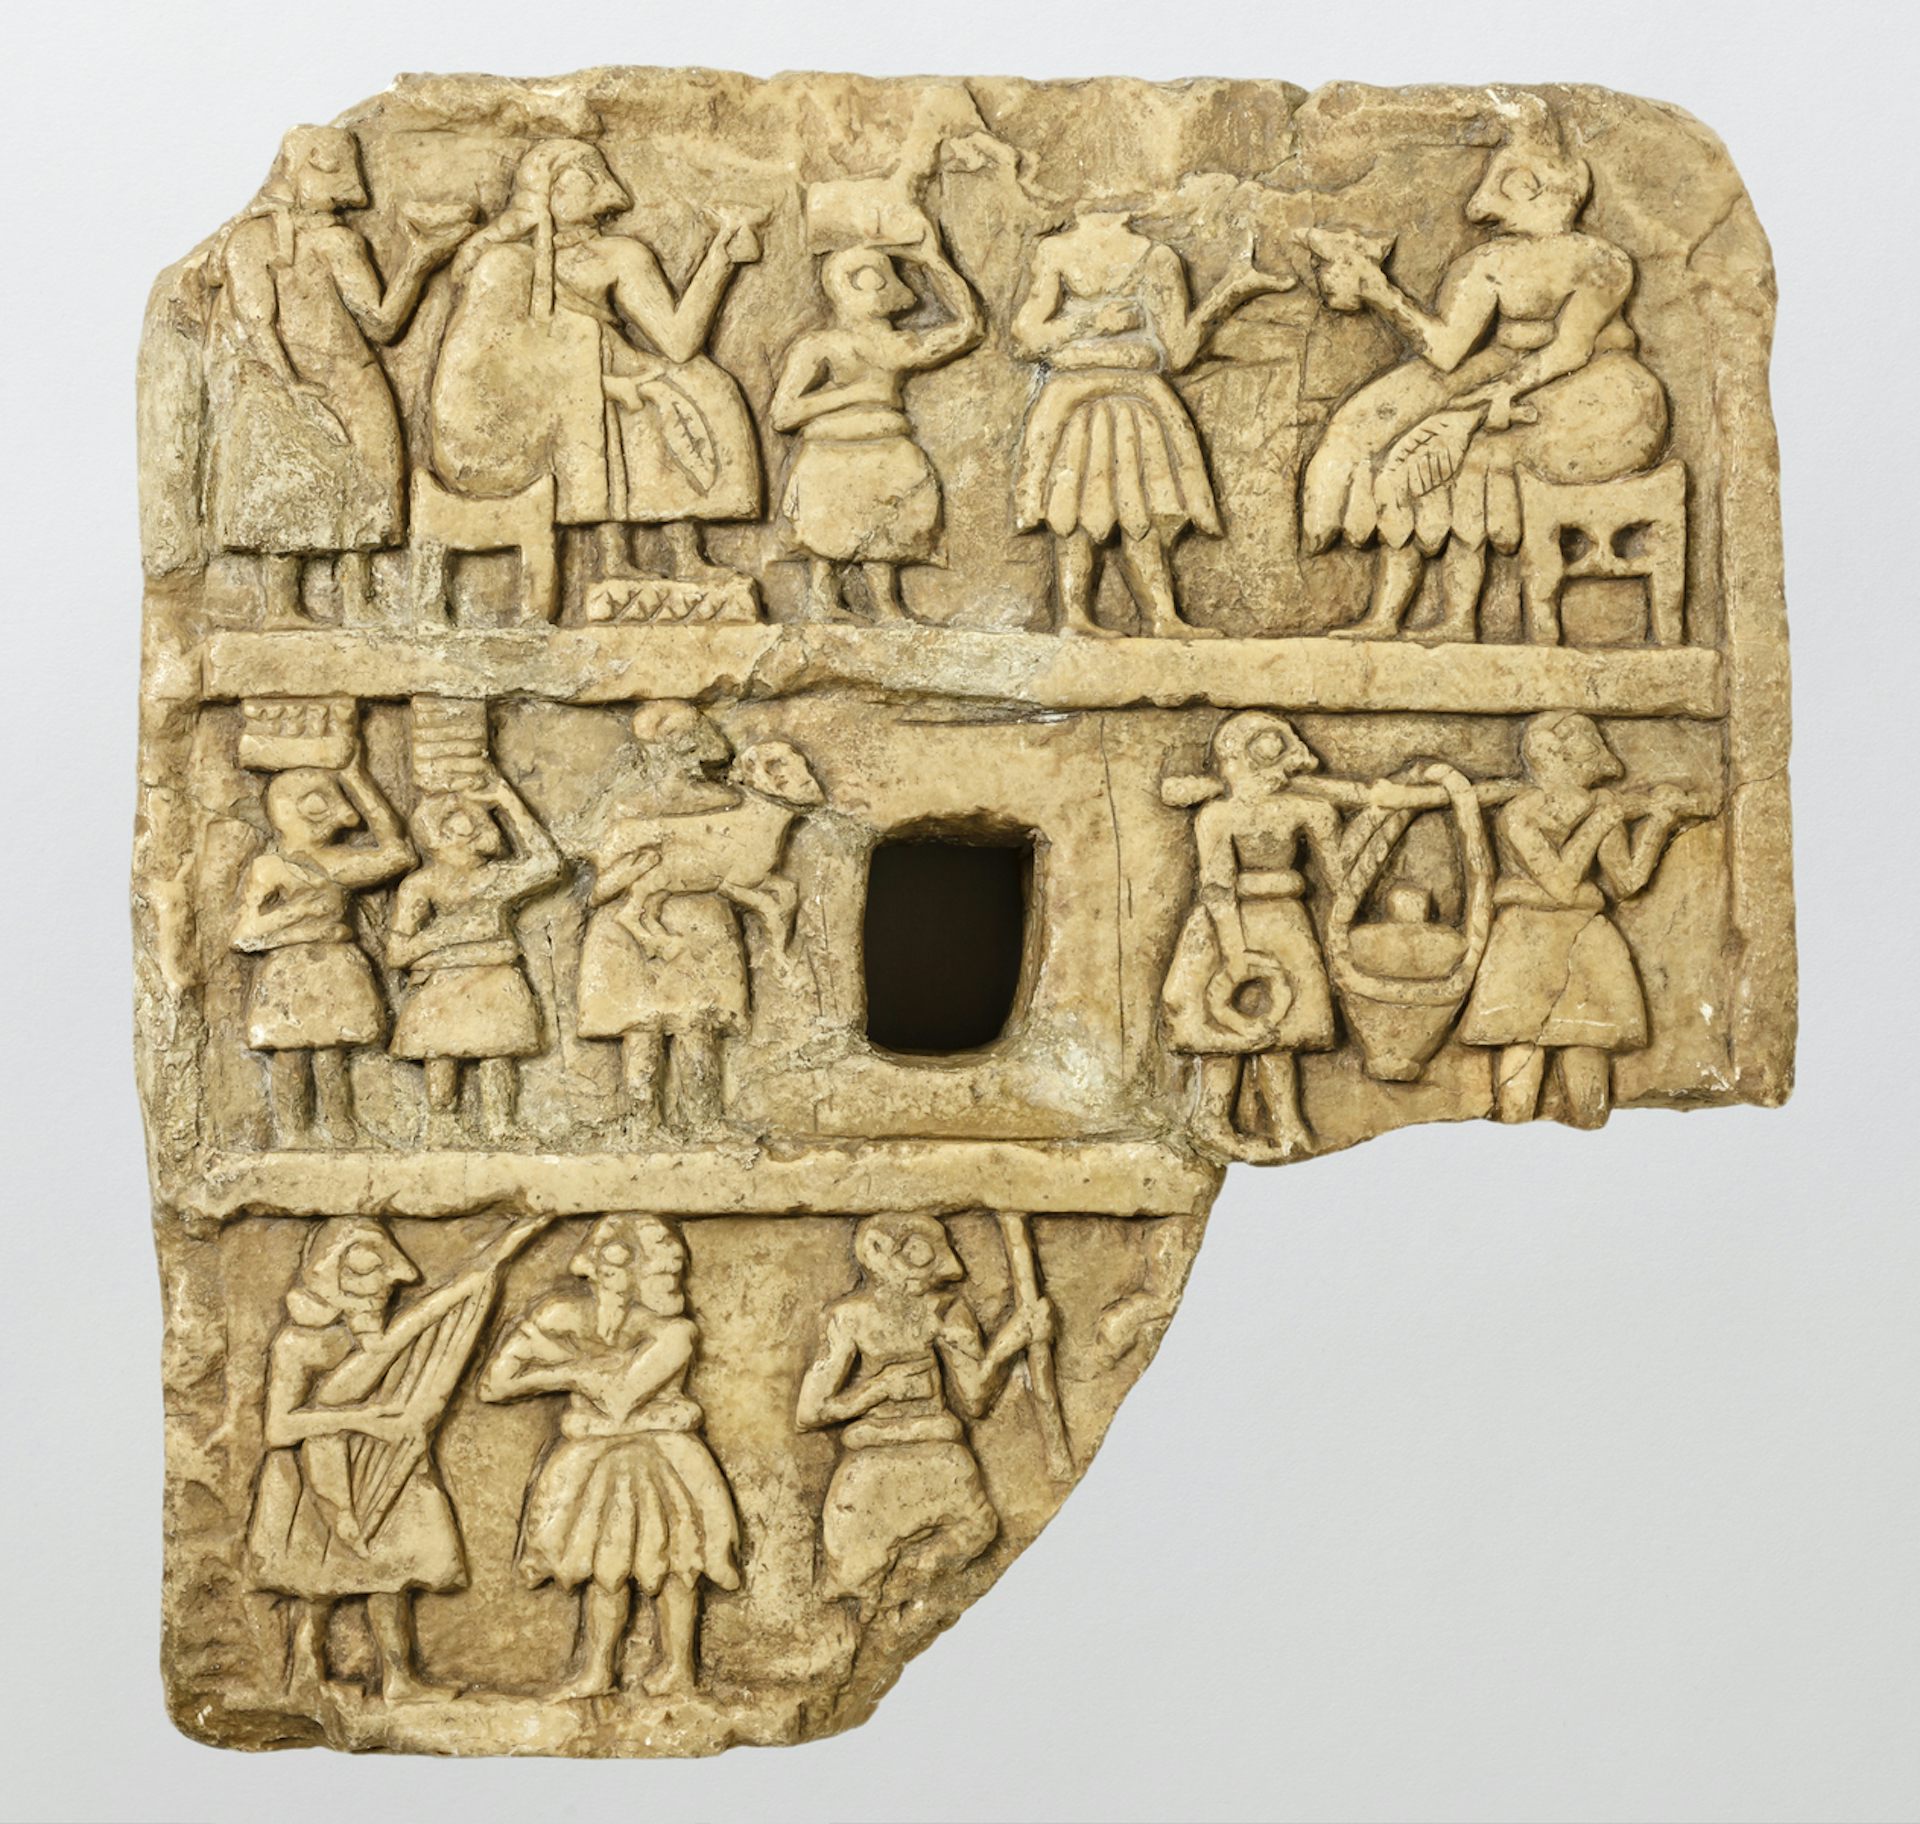 Placa de piedra que muestra a personas reunidas bebiendo en tazas